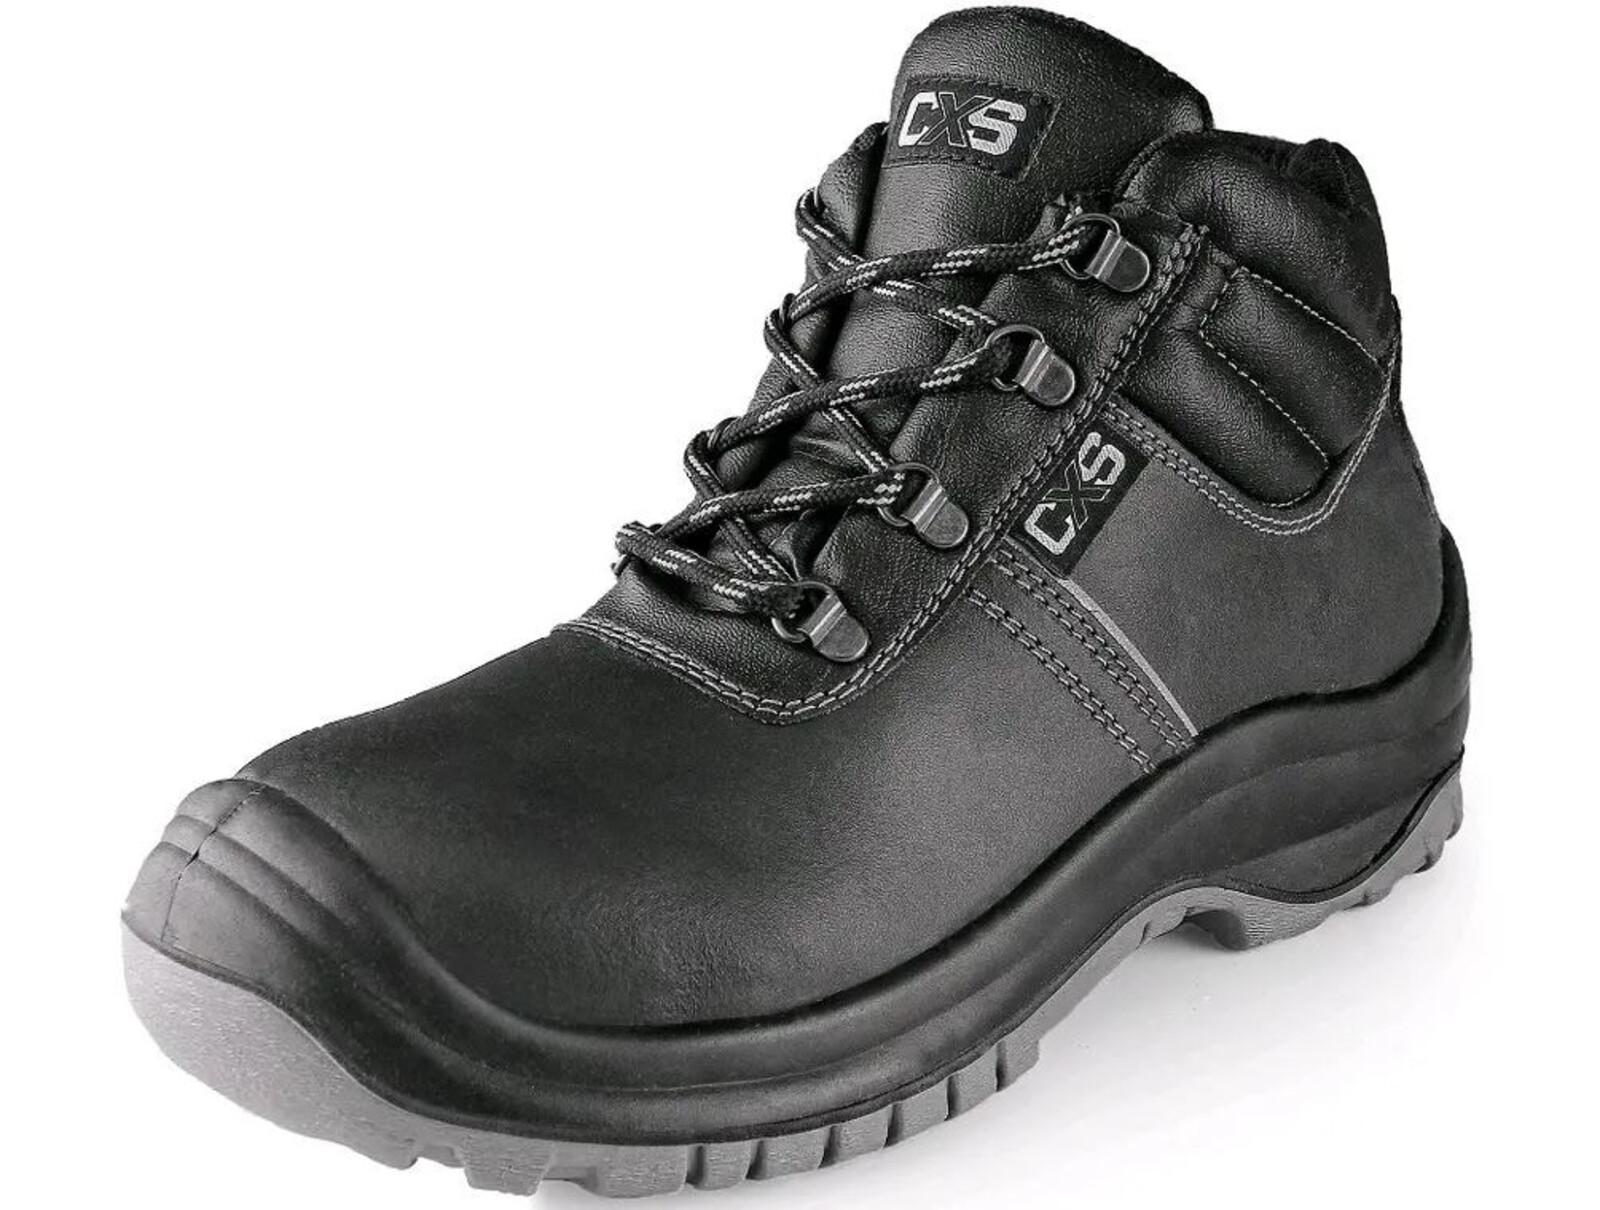 Bezpečnostná členková obuv CXS Safety Steel Mangan S3 - veľkosť: 39, farba: čierna